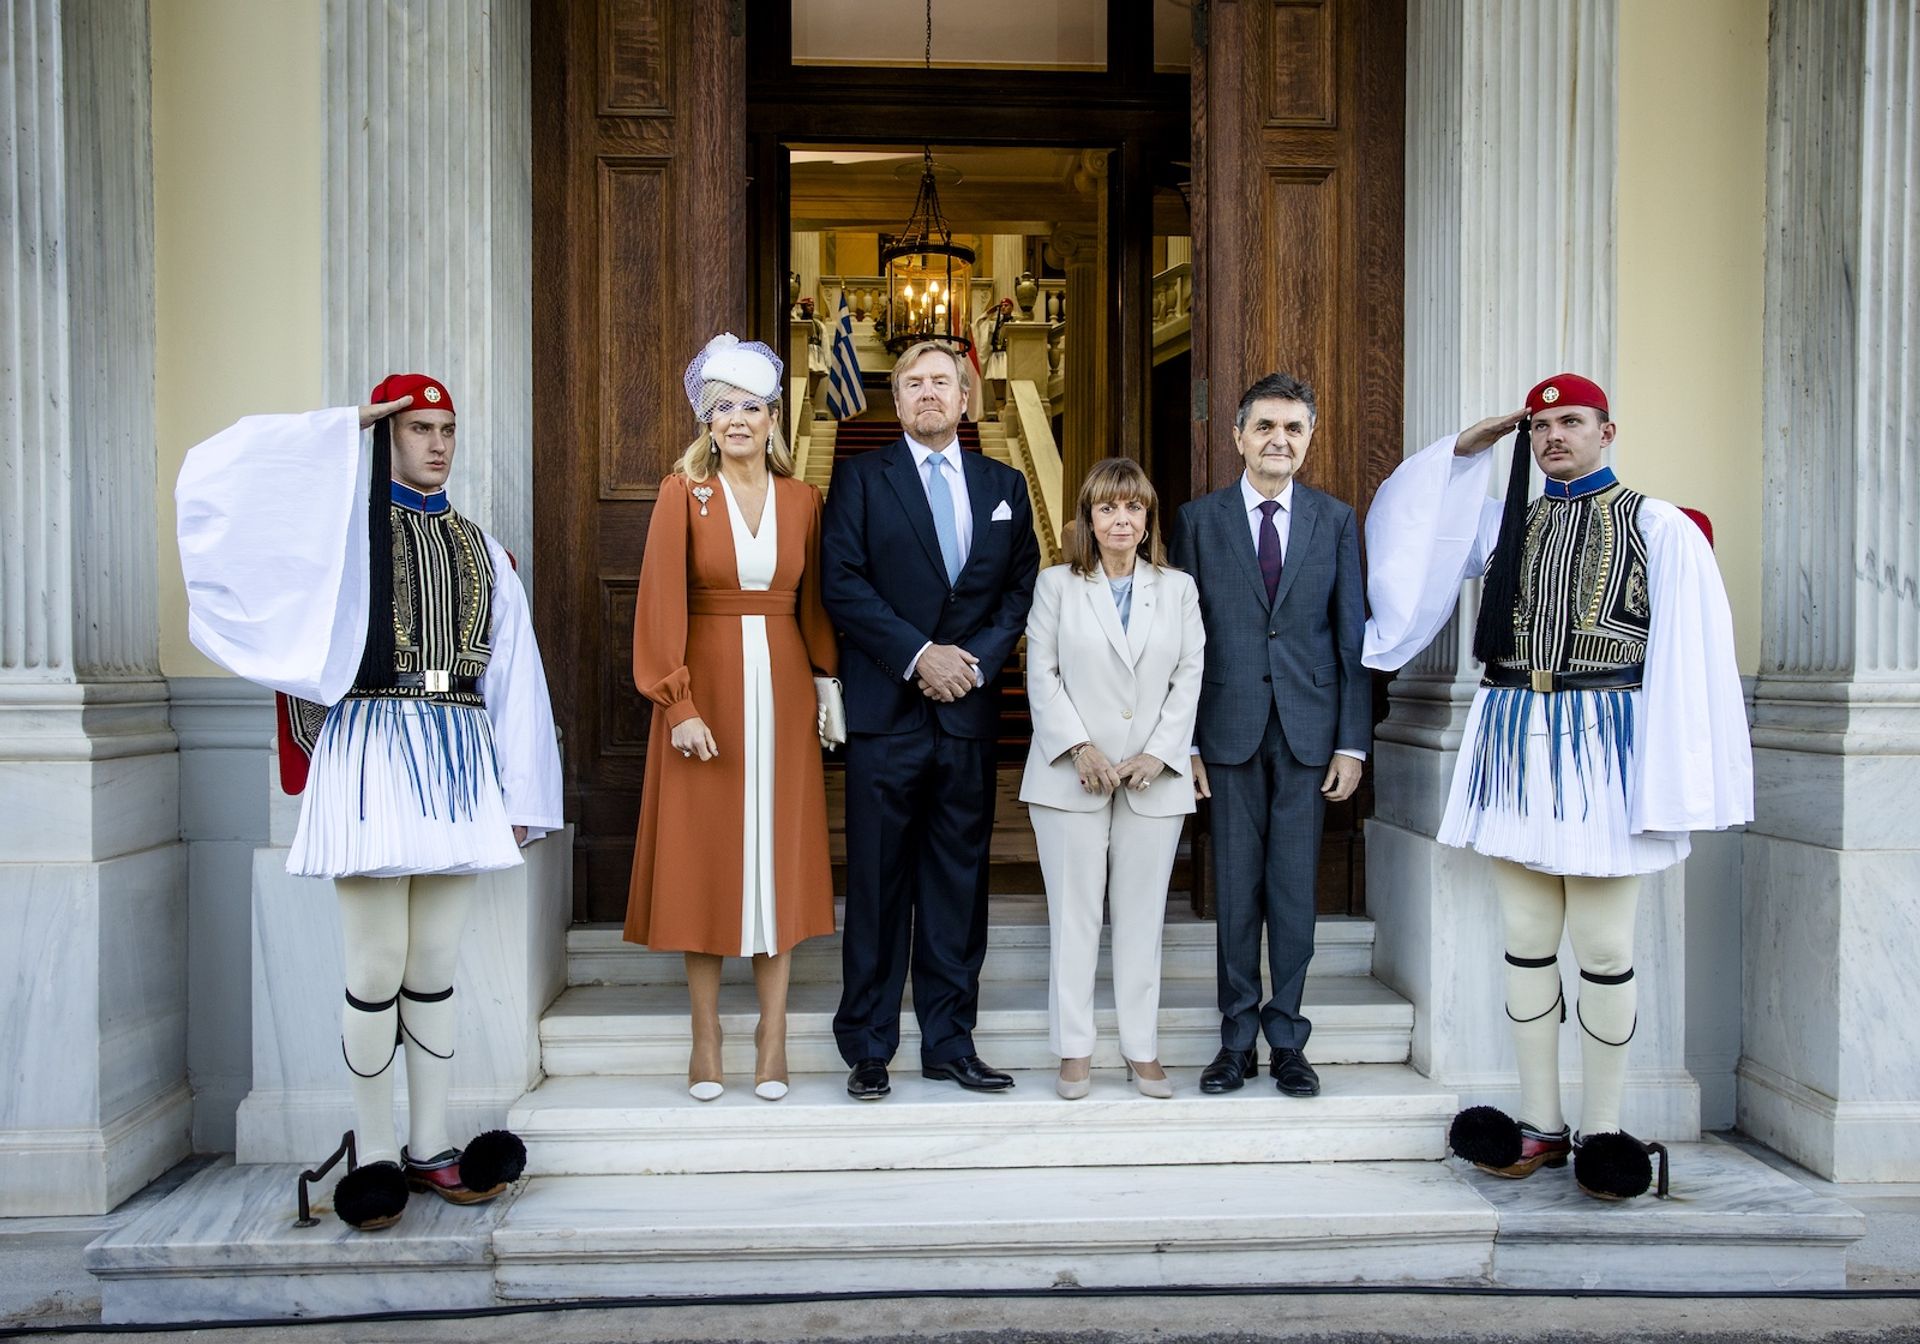 Staatsbezoek-Griekenland-bezoek-president-1